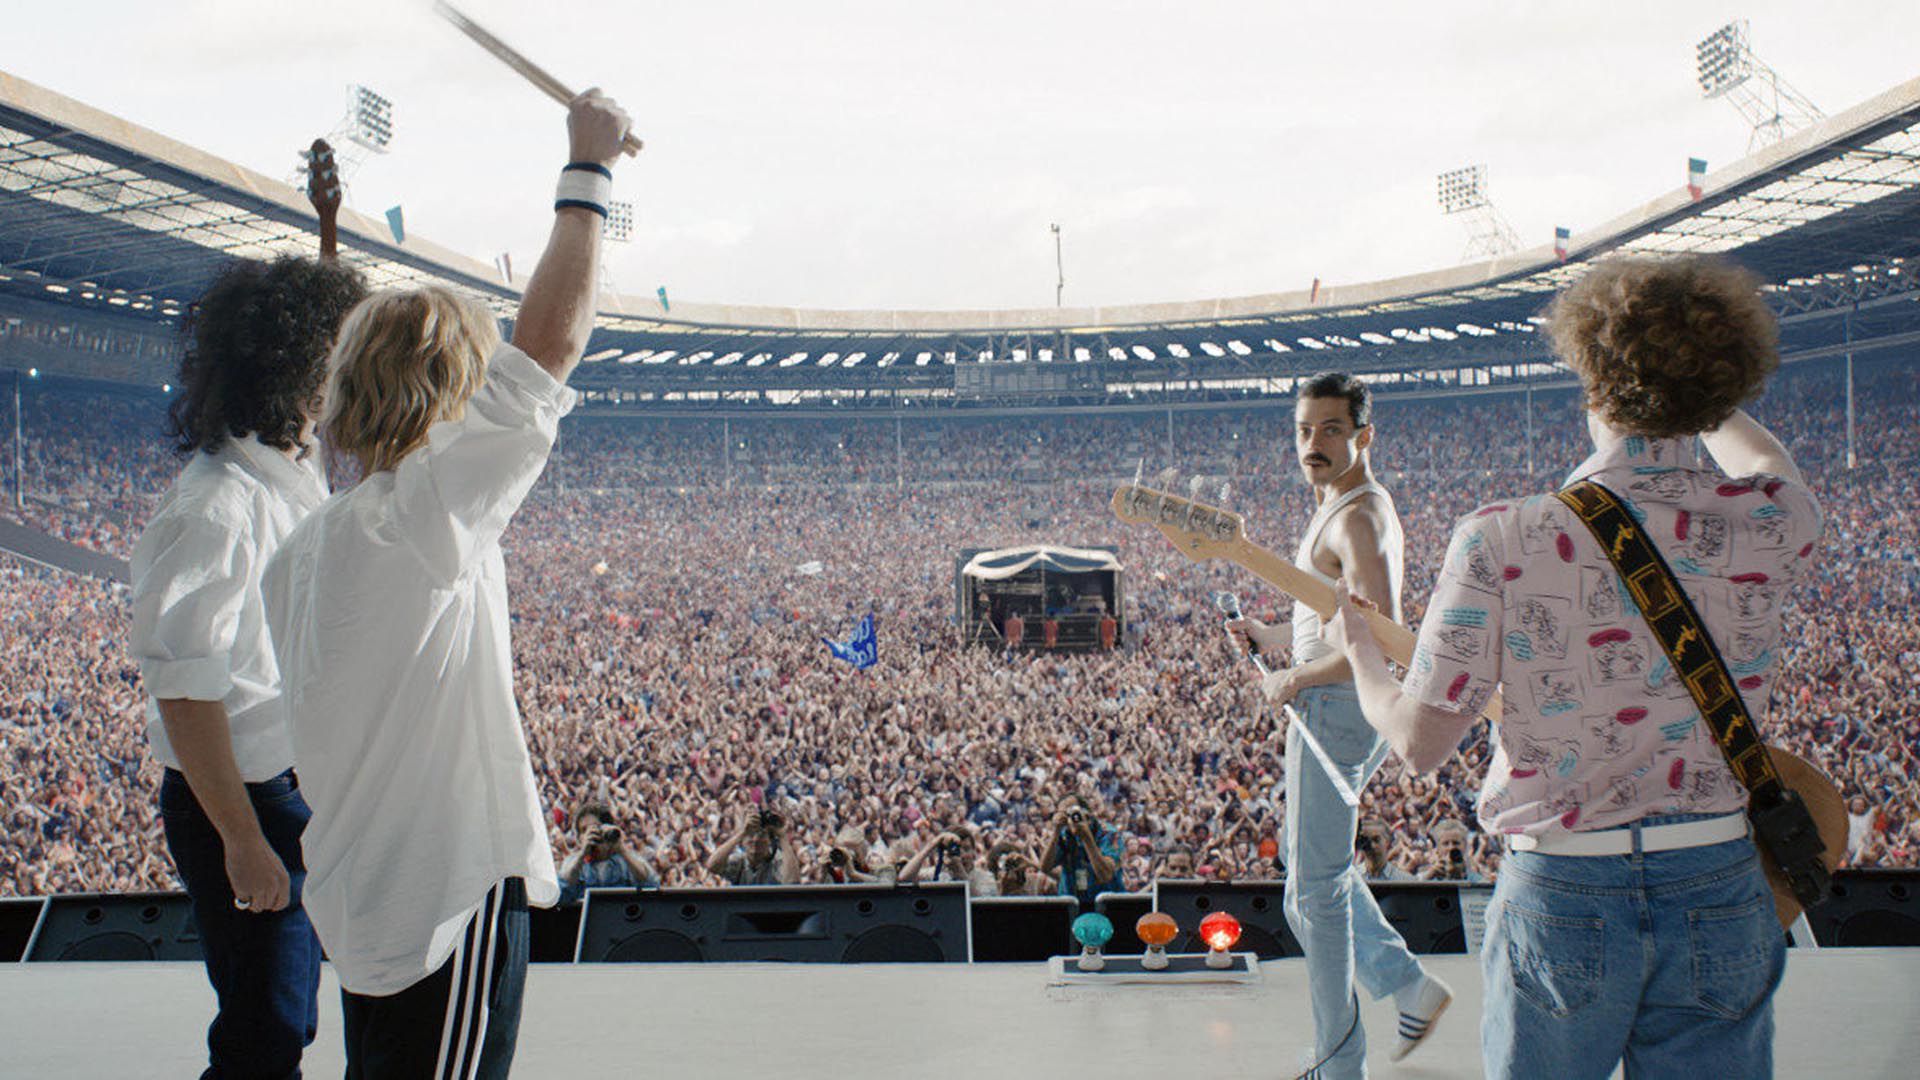 El lanzamiento de la biopic "Bohemian Rhapsody", hizo que la popularidad de Queen creciera exponencialmente 
(Grosby Group)